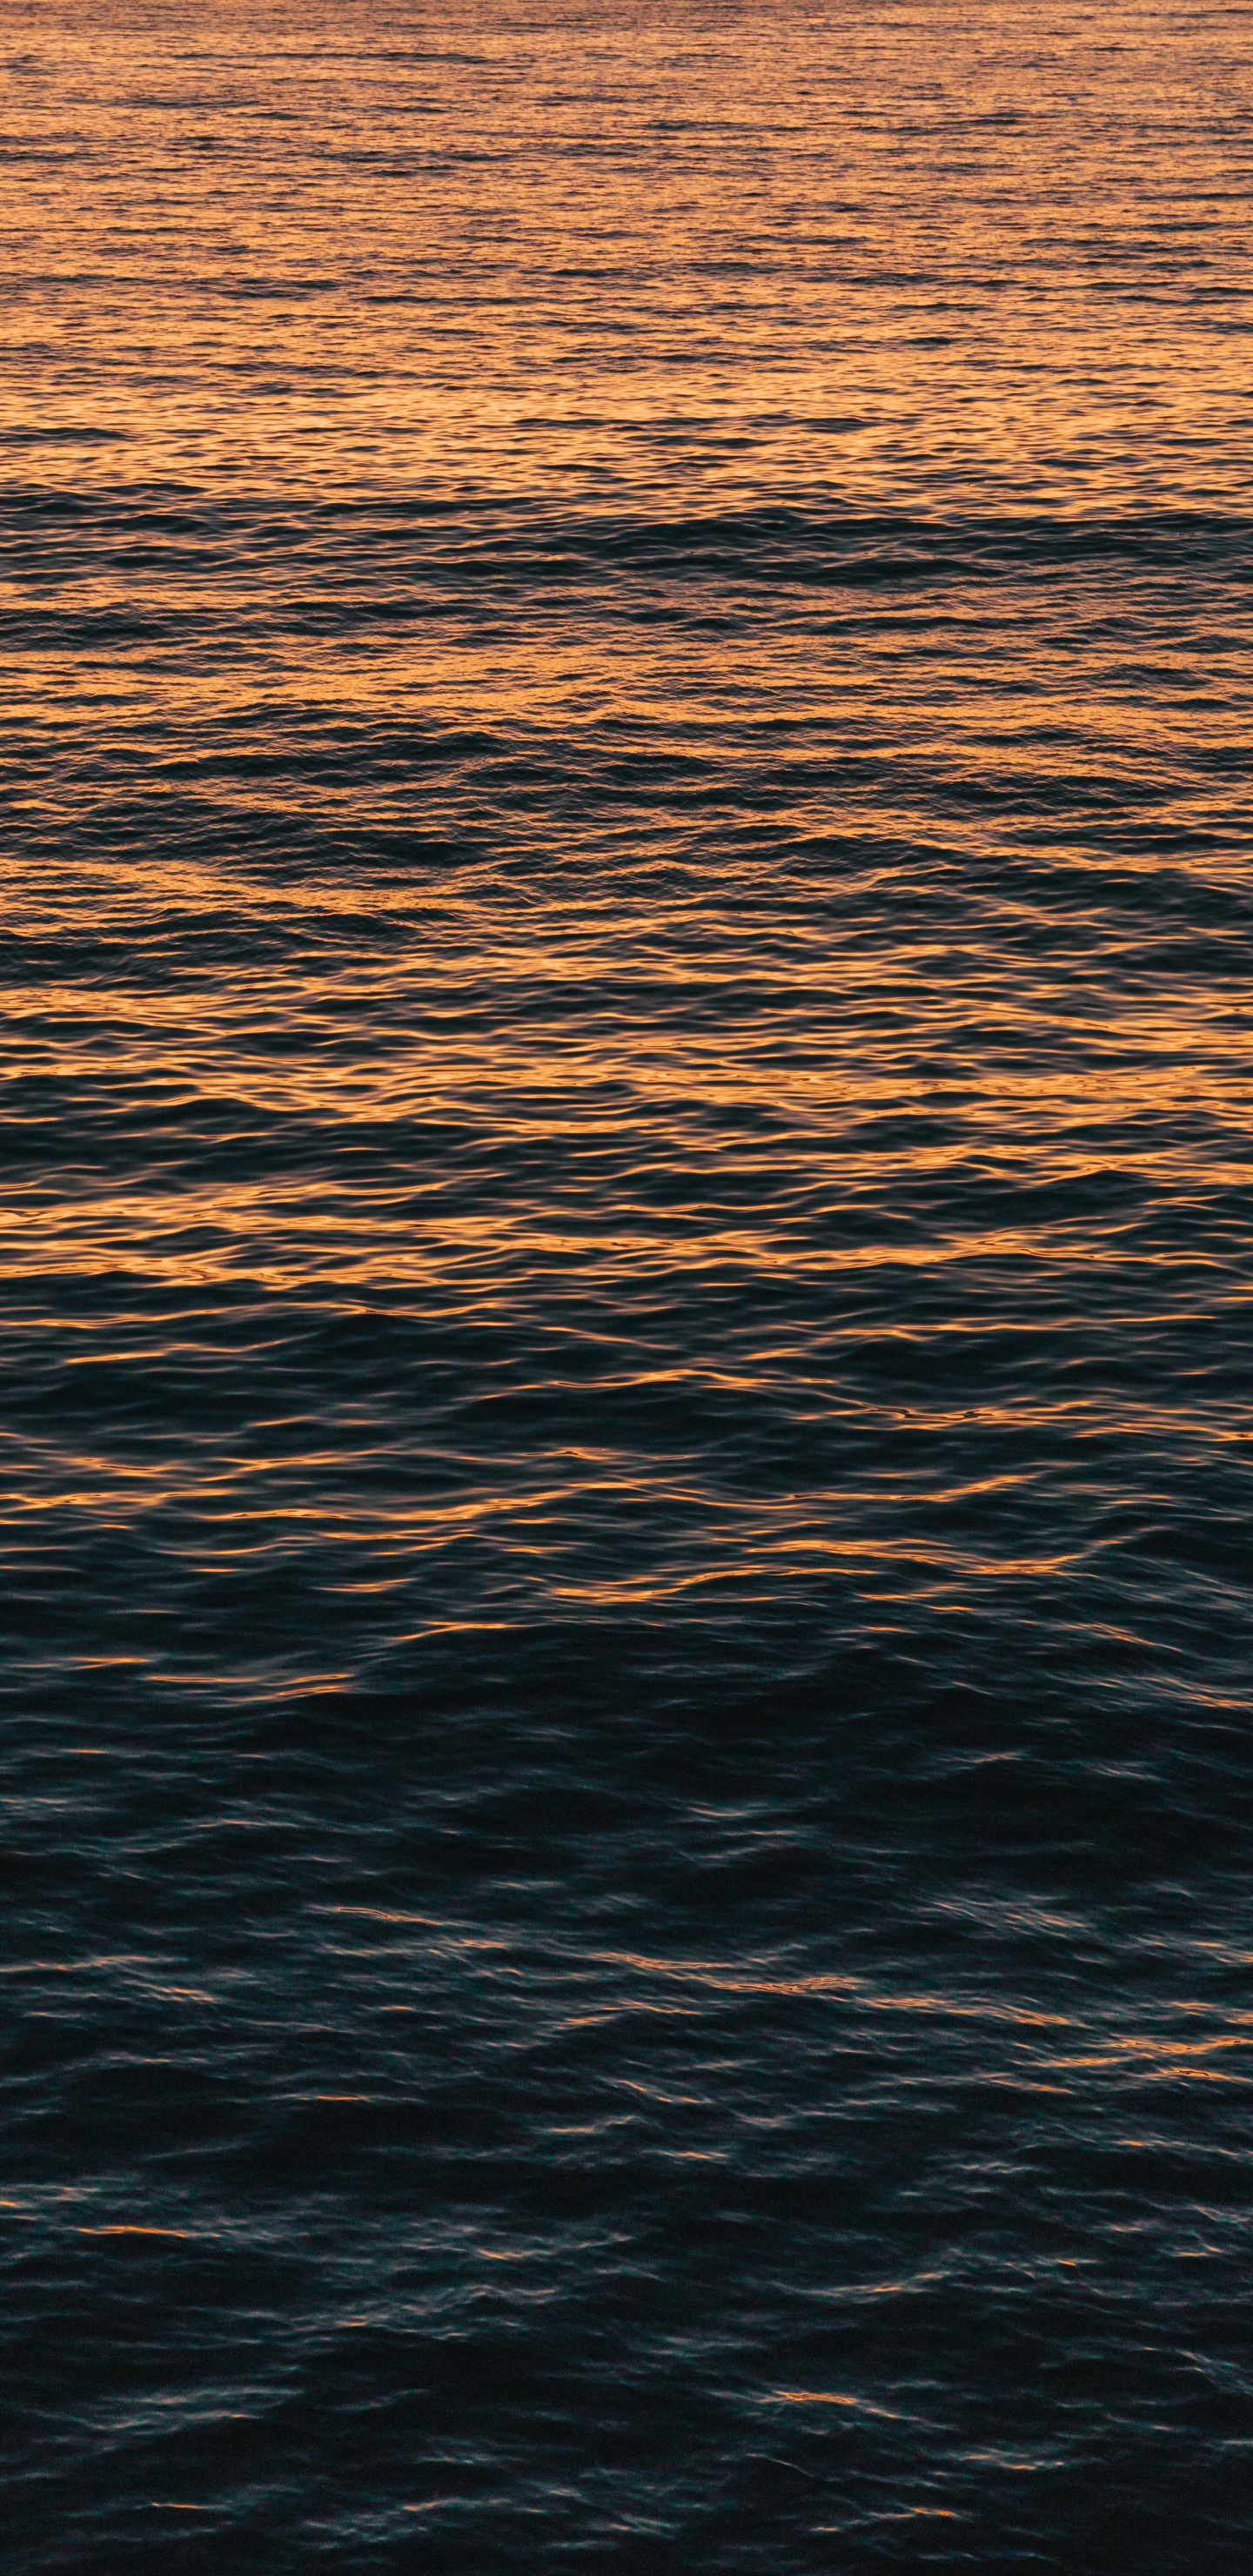 Agua, Mar, Oceano, Calma, Reflexión. Wallpaper in 1440x2960 Resolution